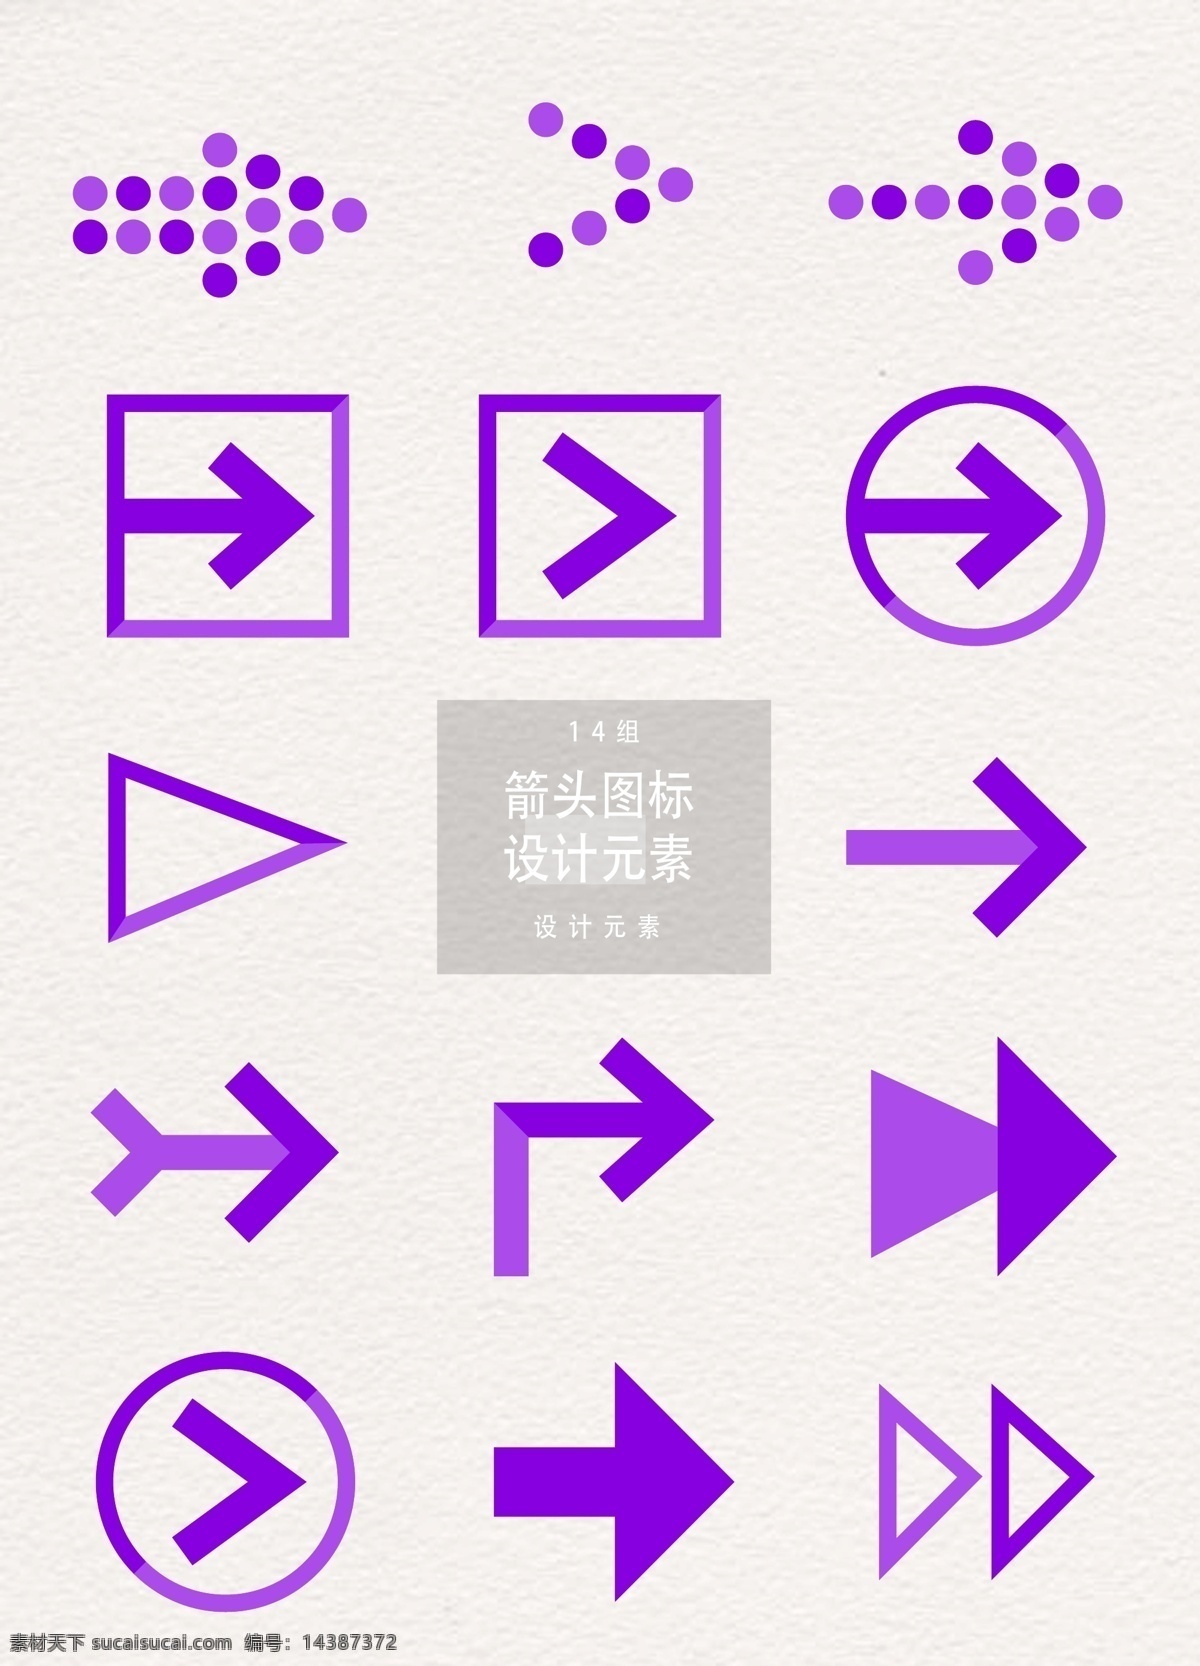 紫色 箭头 图标 元素 设计元素 箭头图标 图标设计 指示 紫色箭头 箭头设计